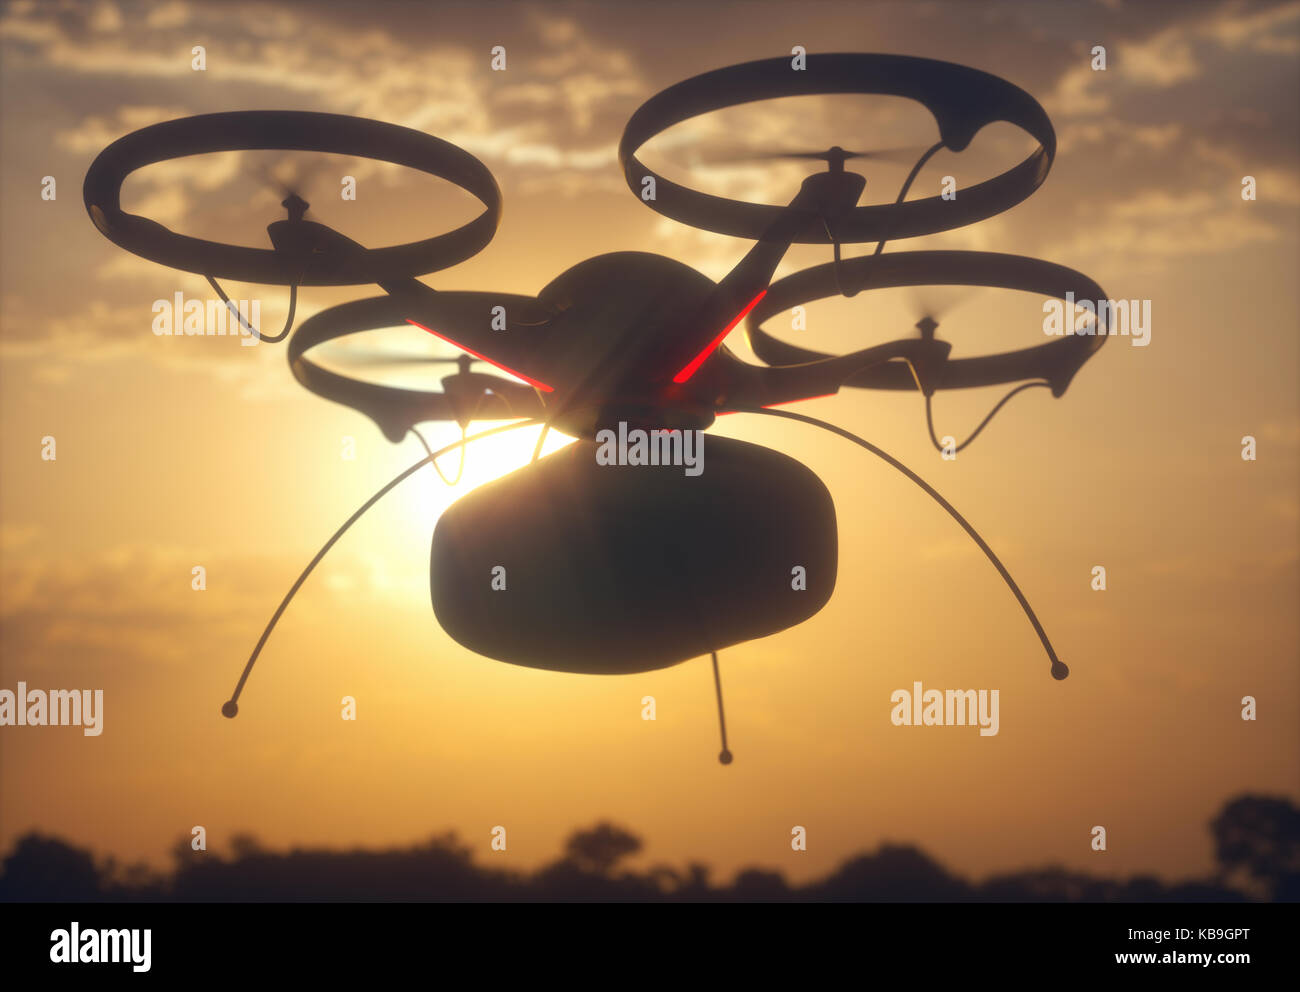 Ilustración 3d. Imagen conceptual de entrega de paquete por zumbido. vehículo aéreo no tripulado (UAV) utilizados para el transporte de paquetes. Foto de stock